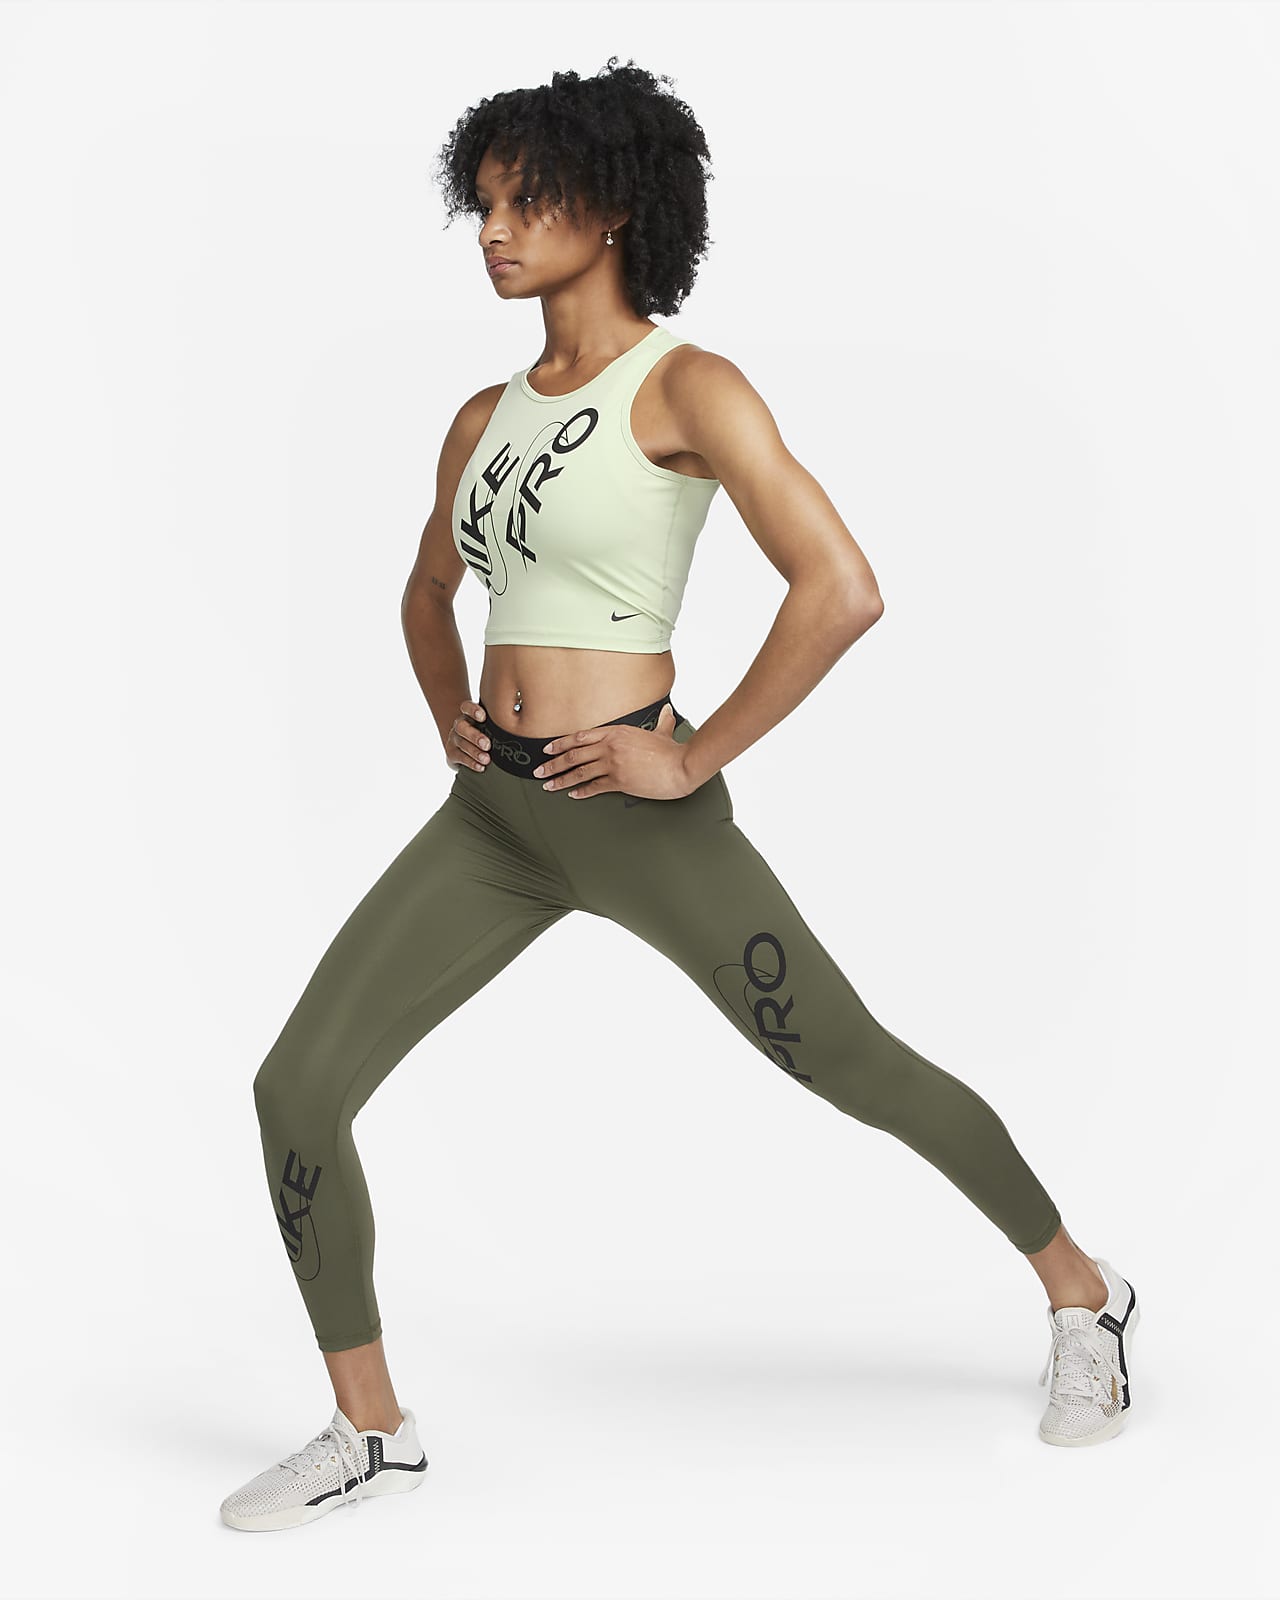 Nike Pro Women's Mid-Rise Full-Length Graphic Training Leggings